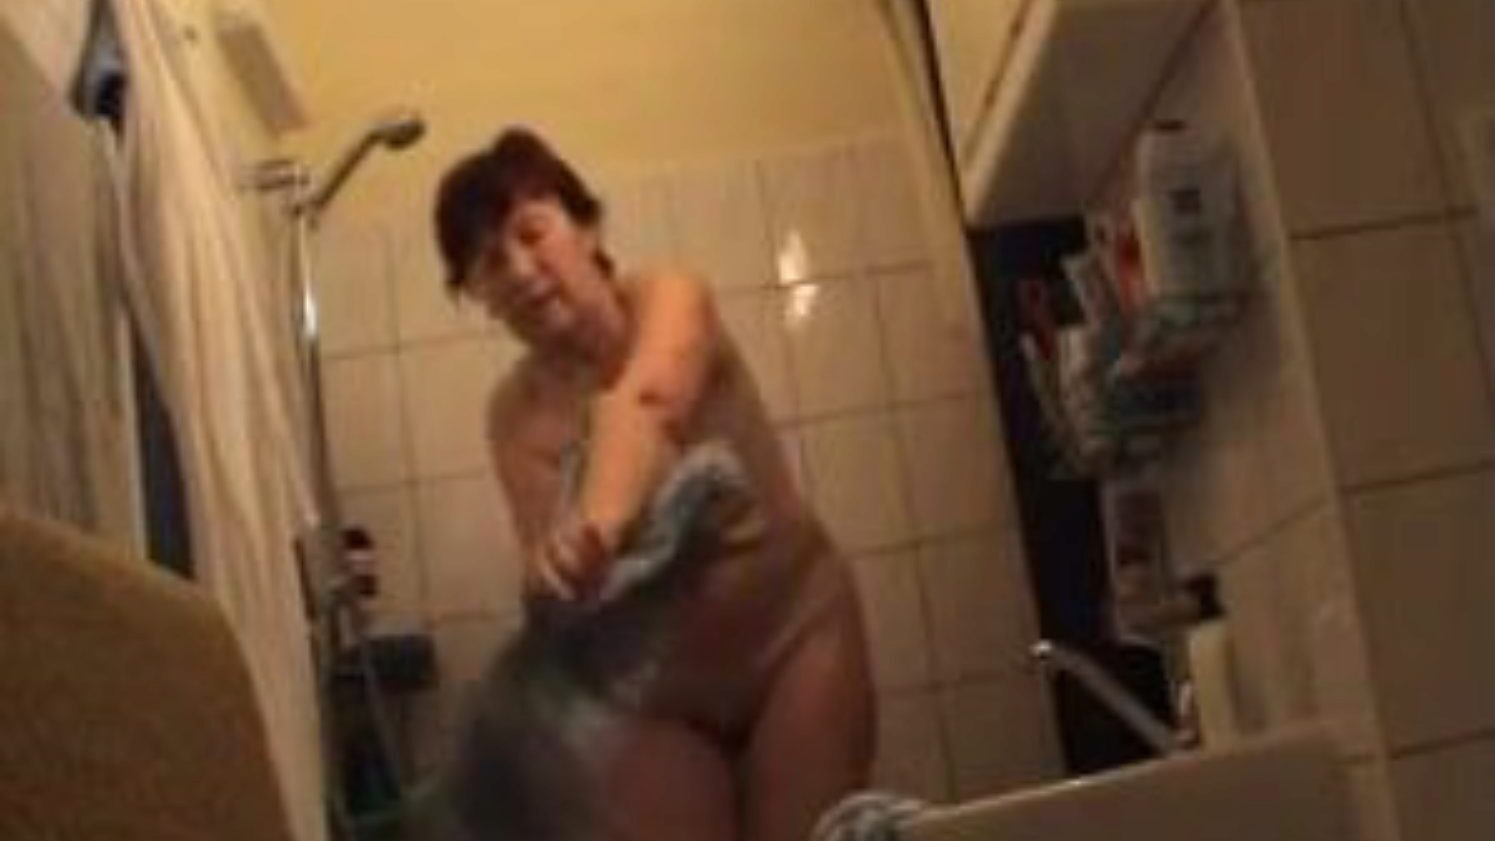 saksalainen mummo alaston kylpyhuoneessa, ilmaiset saksalaiset porno videomainokset katsella saksalainen mummo alaston kylpyhuoneen elokuvan kohtauksessa xhamsterissa, suurin sukupuoliputkisivusto, jossa on tonnia ilmaisia ​​saksalaisia ​​alasti mummo ja kypsä porno vids